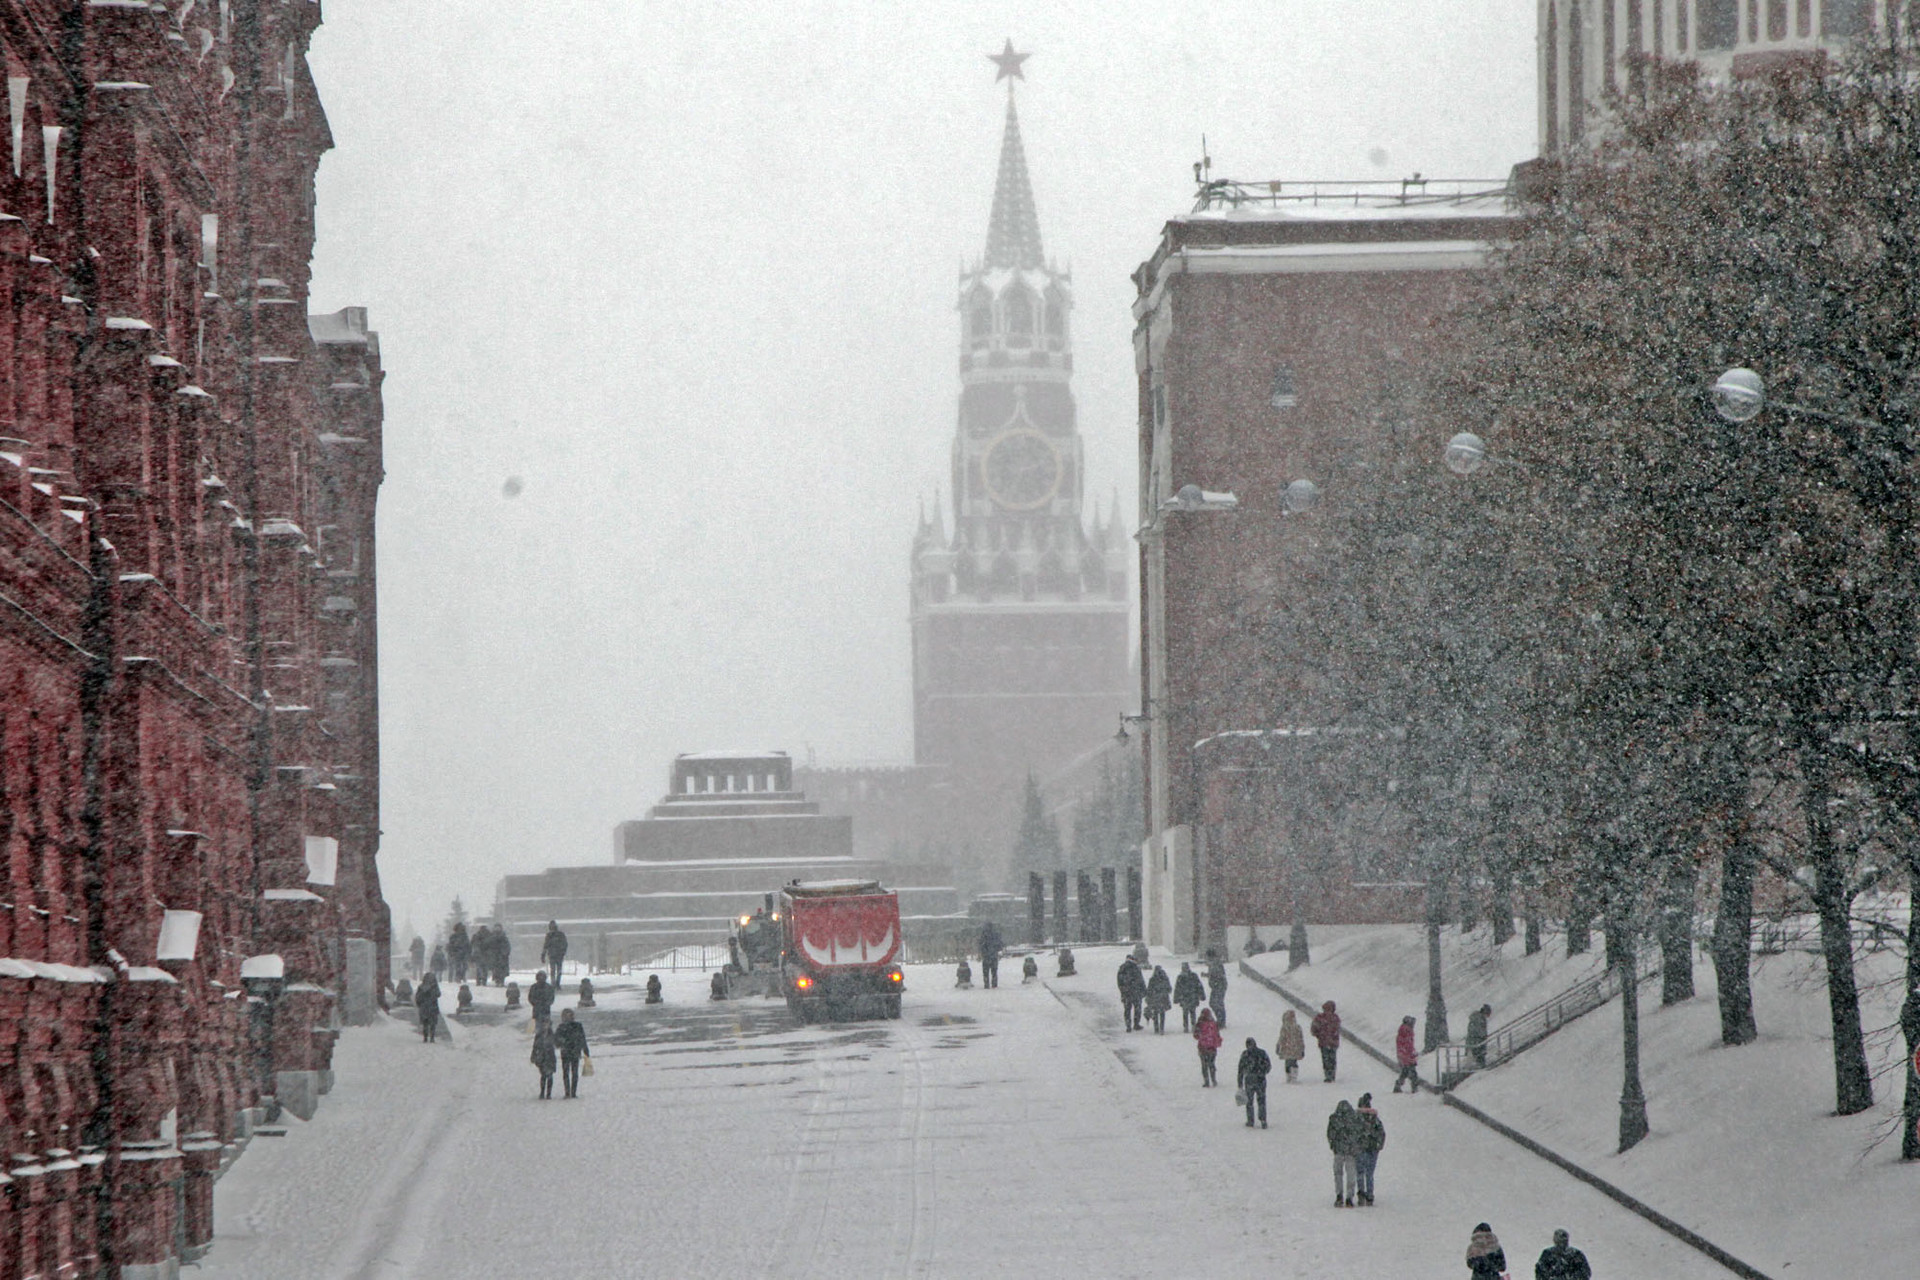 Suasana badai salju di kawasan Lapangan Merah, Moskow, Rusia, Sabtu (26/1).   